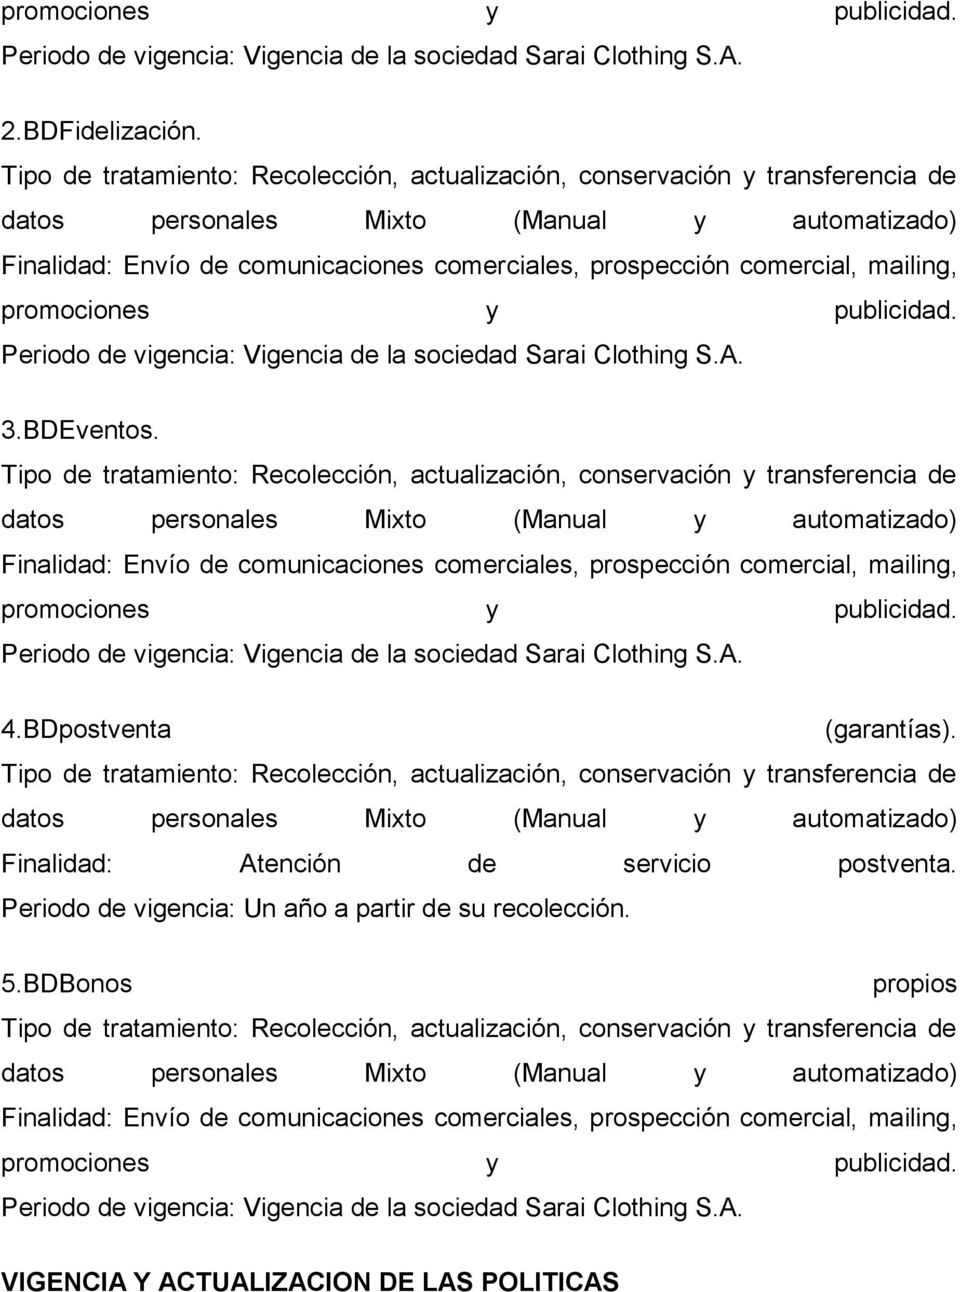 mailing, promociones y publicidad. Periodo de vigencia: Vigencia de la sociedad Sarai Clothing S.A. 3.BDEventos.  mailing, promociones y publicidad.